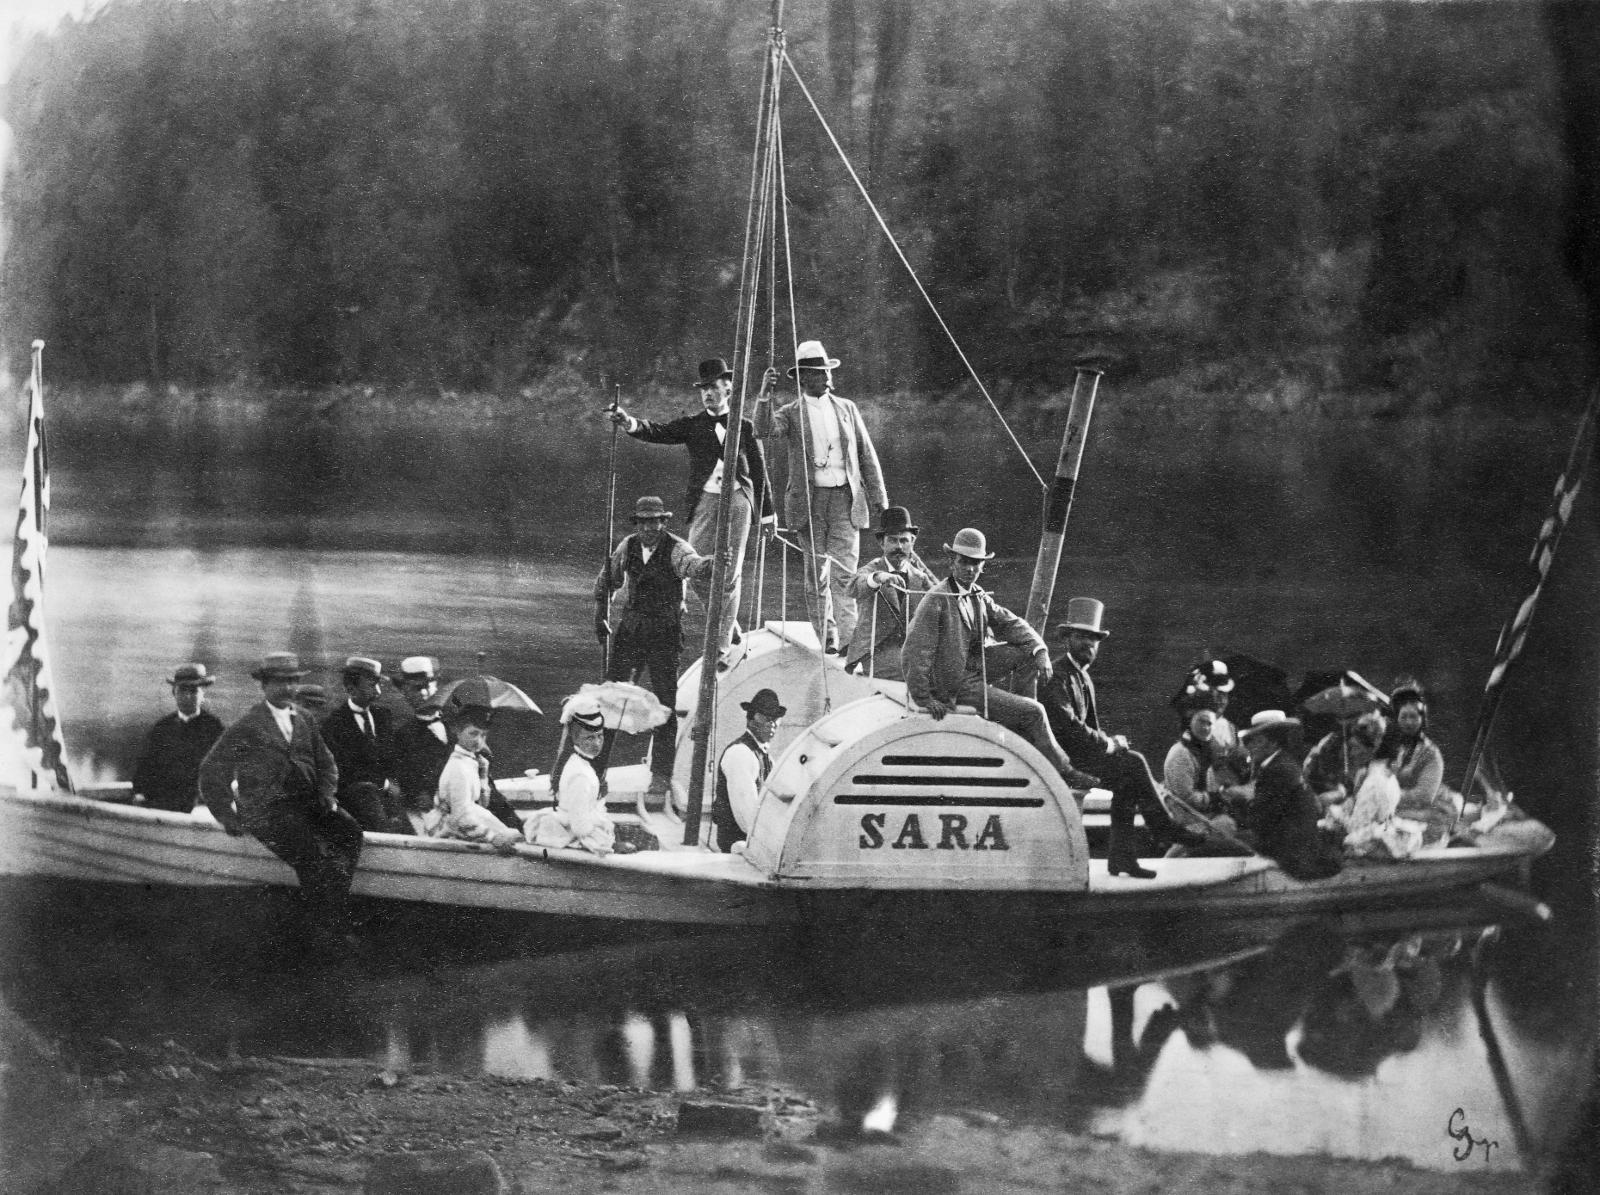 Slik så hjulbåten Sara ut. Båten var en forlystelsesbåt. Gjestene som kom til Sarabråten fikk seg gjerne en tur med denne eller en av de to eller tre andre han hadde. Dette bildet er fra 1871.